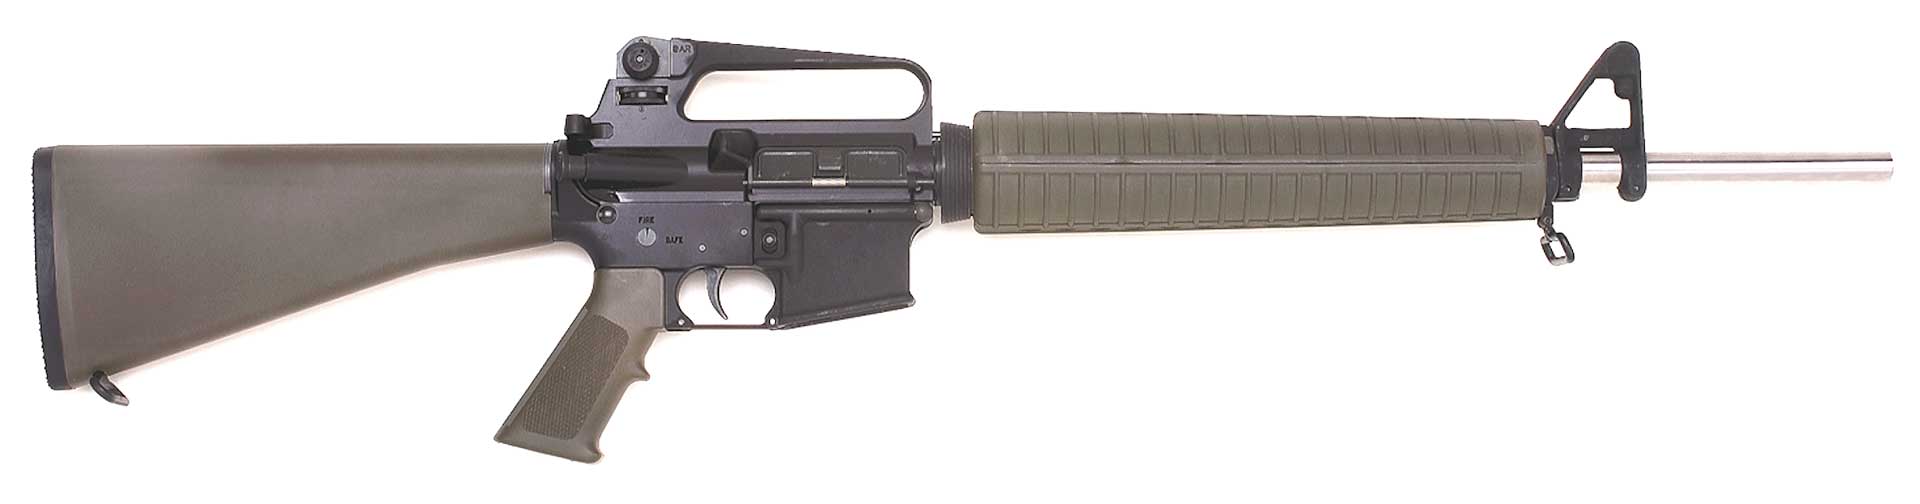 right side rifle ar15 armalite gun